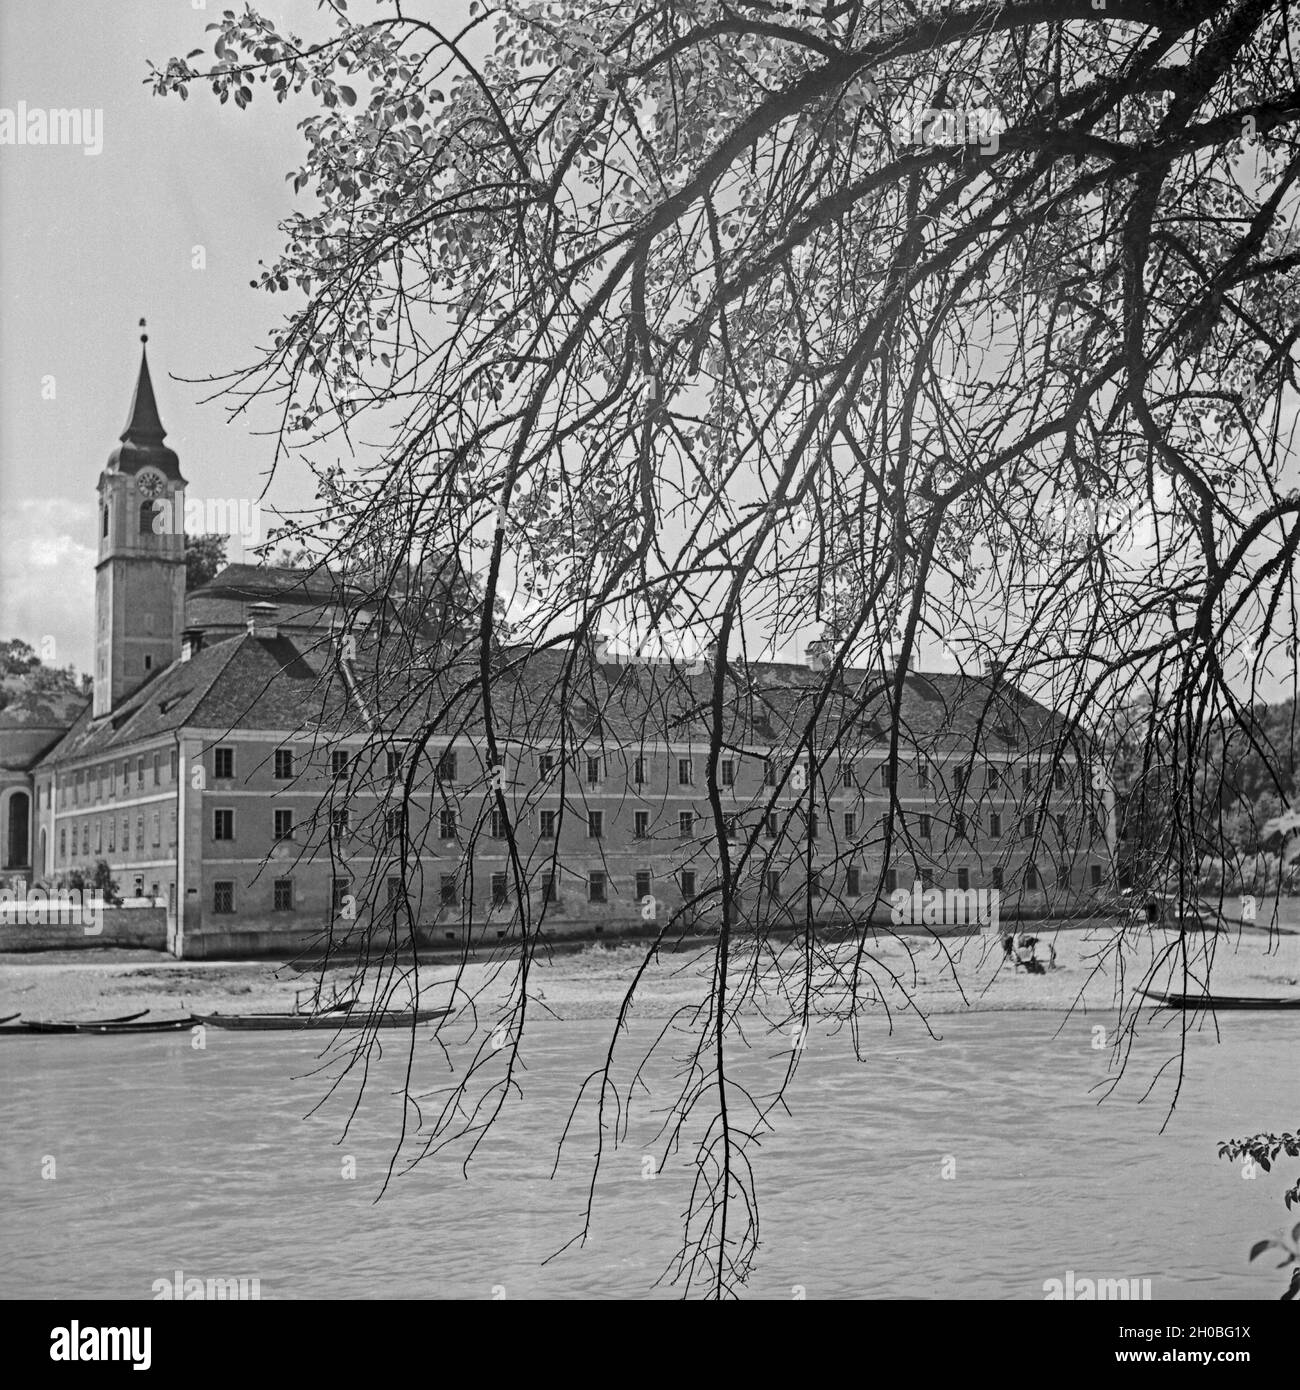 Das Kloster Weltenburg am Donaudurchbruch, Deutschland 1930er Jahre. Weltenburg Abbey on river Danube, Germany 1930s. Stock Photo